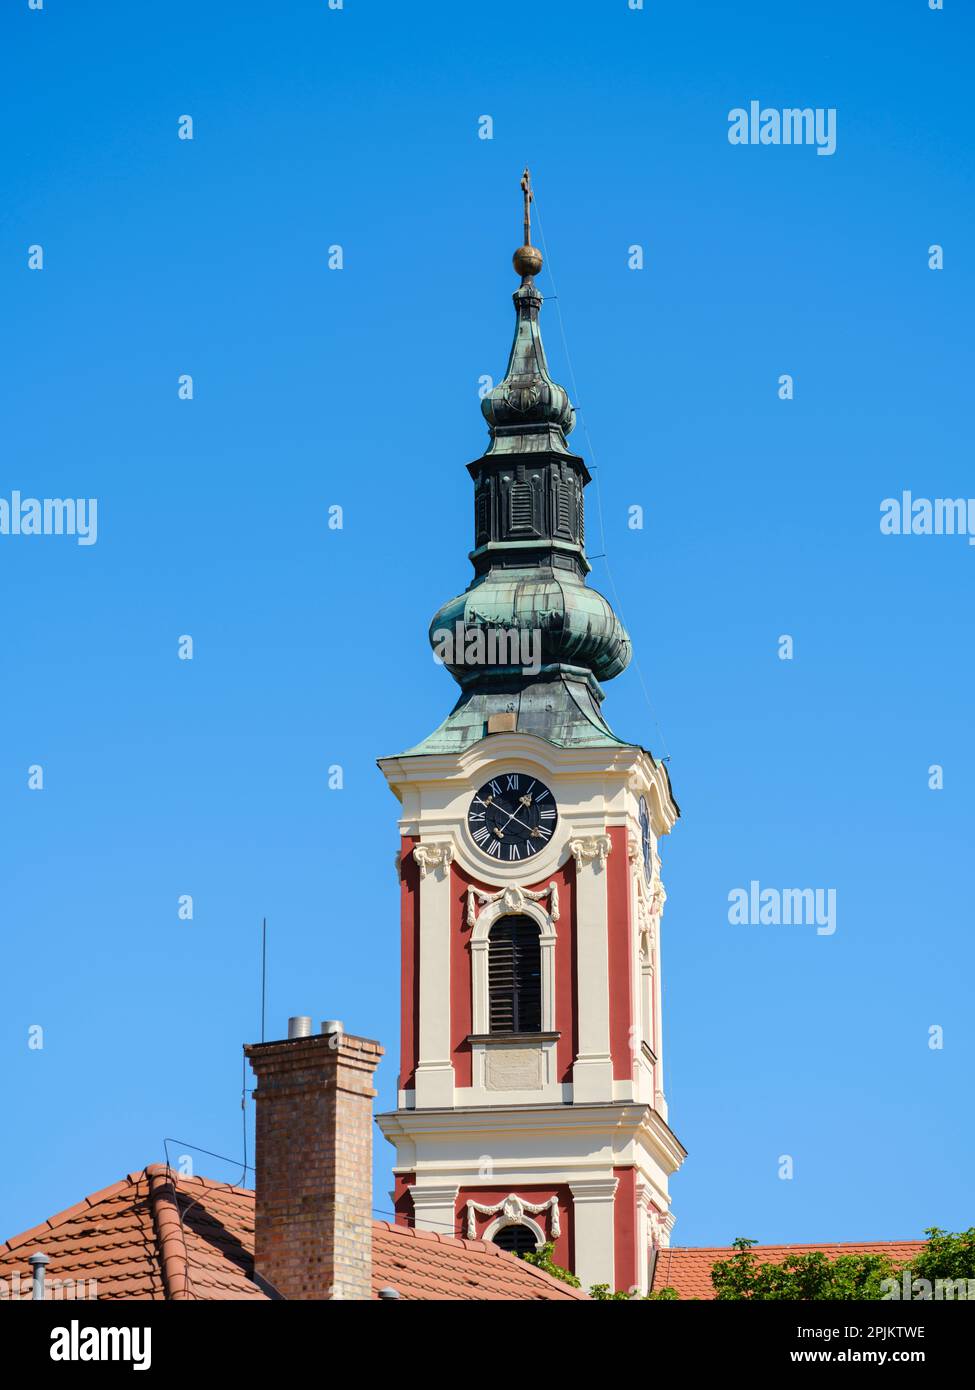 Église Belgrad-szekesegyhaz (Église Belgrade-serbe). La ville de Szentendre près de Budapest, Hongrie Banque D'Images